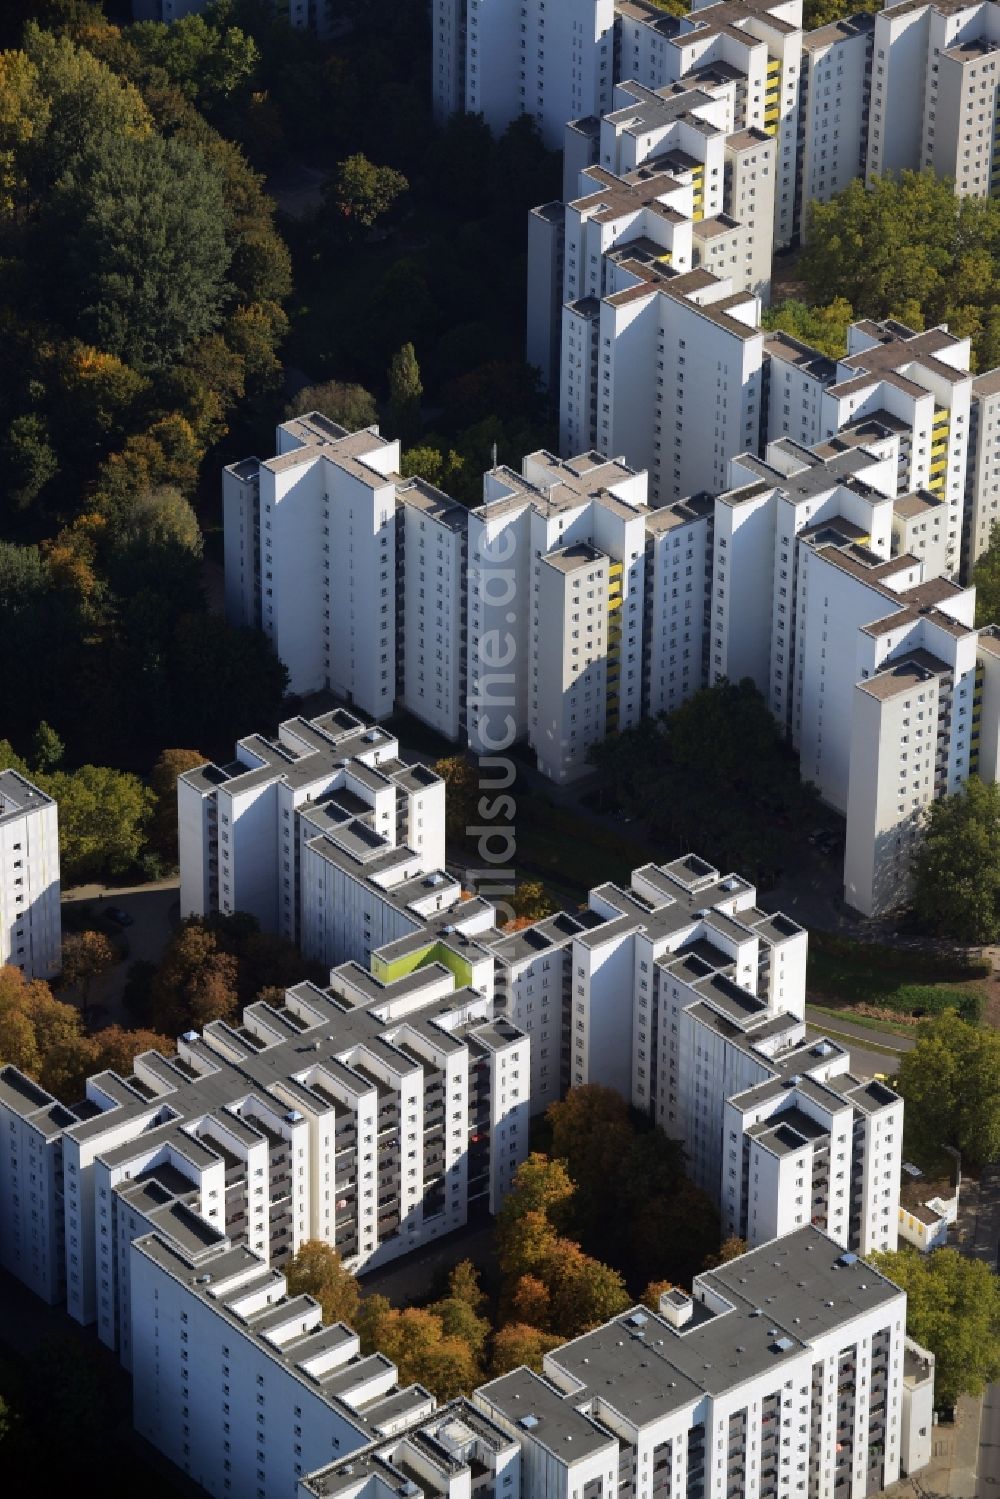 Berlin aus der Vogelperspektive: Wohnblöcke in der Großwohnsiedlung Märkisches Viertel in Berlin